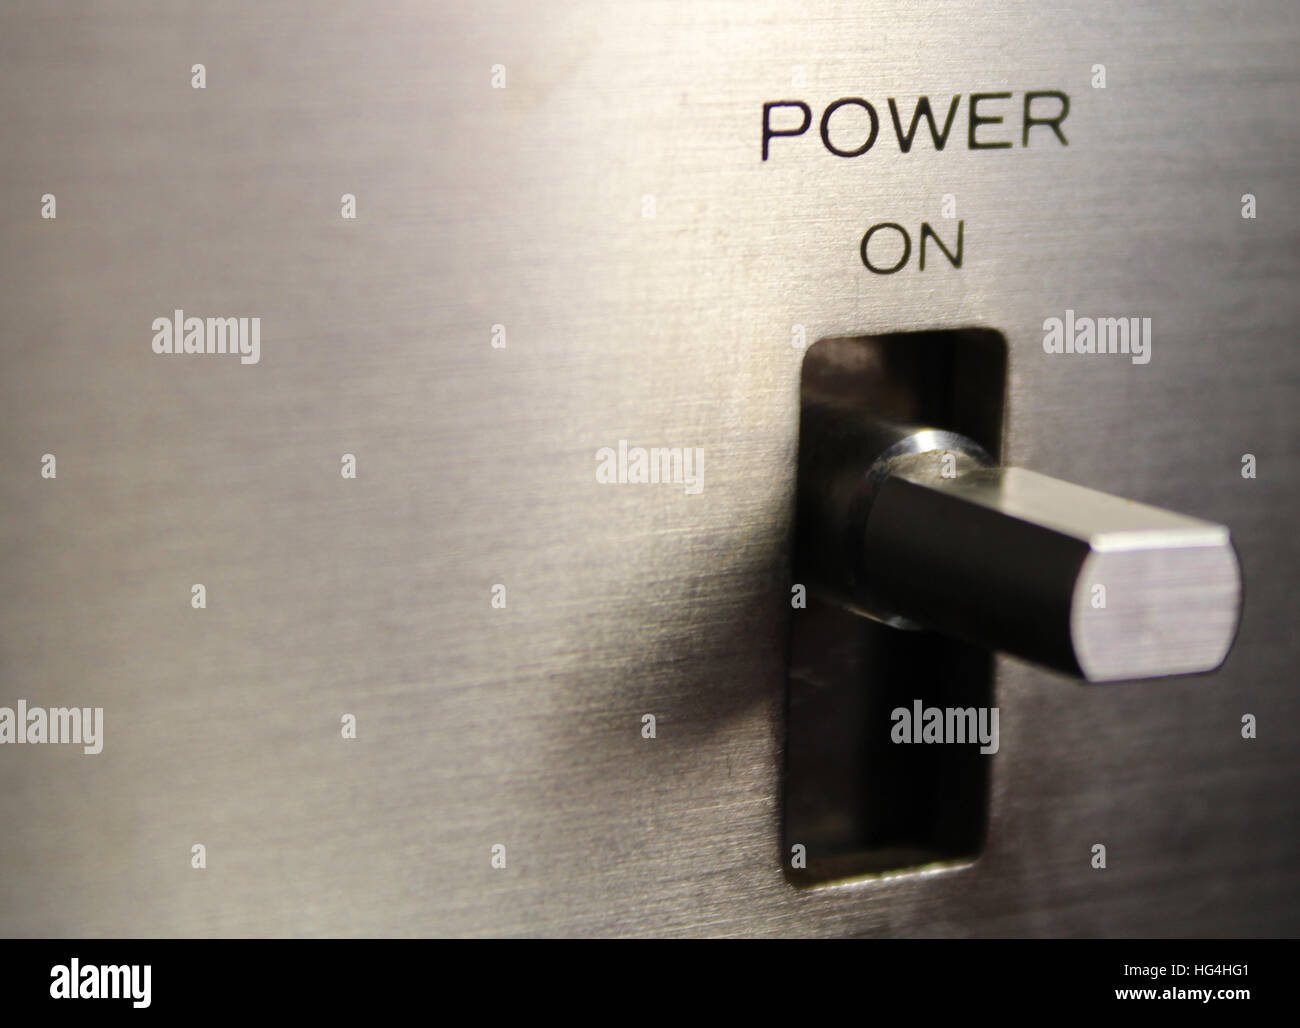 A power flip switch Stock Photo